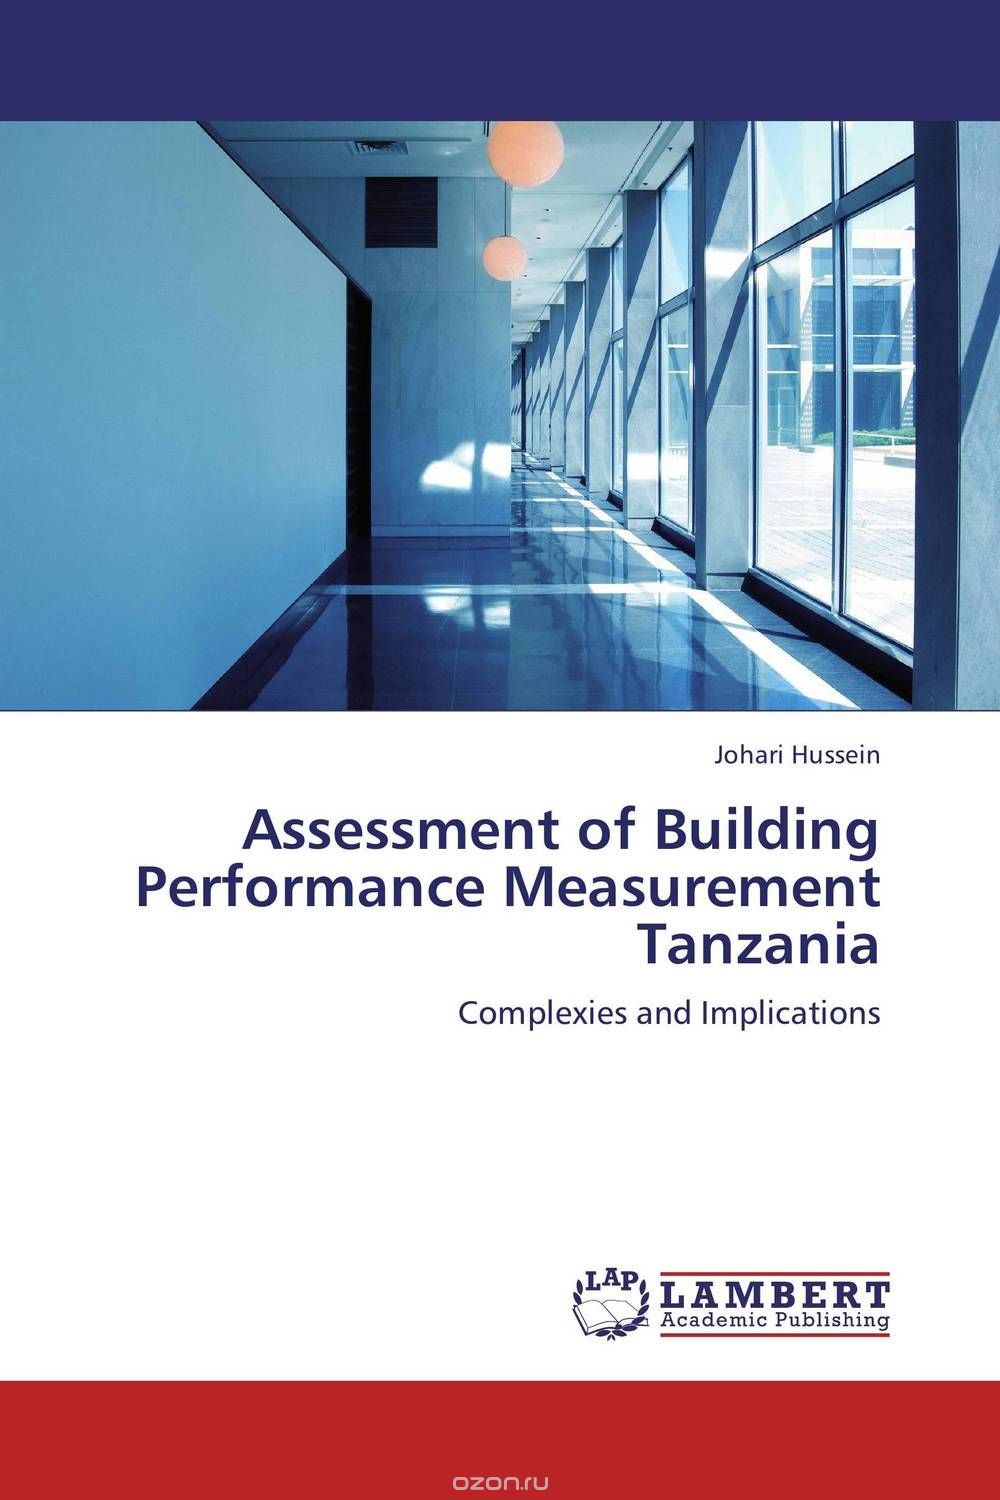 Скачать книгу "Assessment of Building Performance Measurement Tanzania"